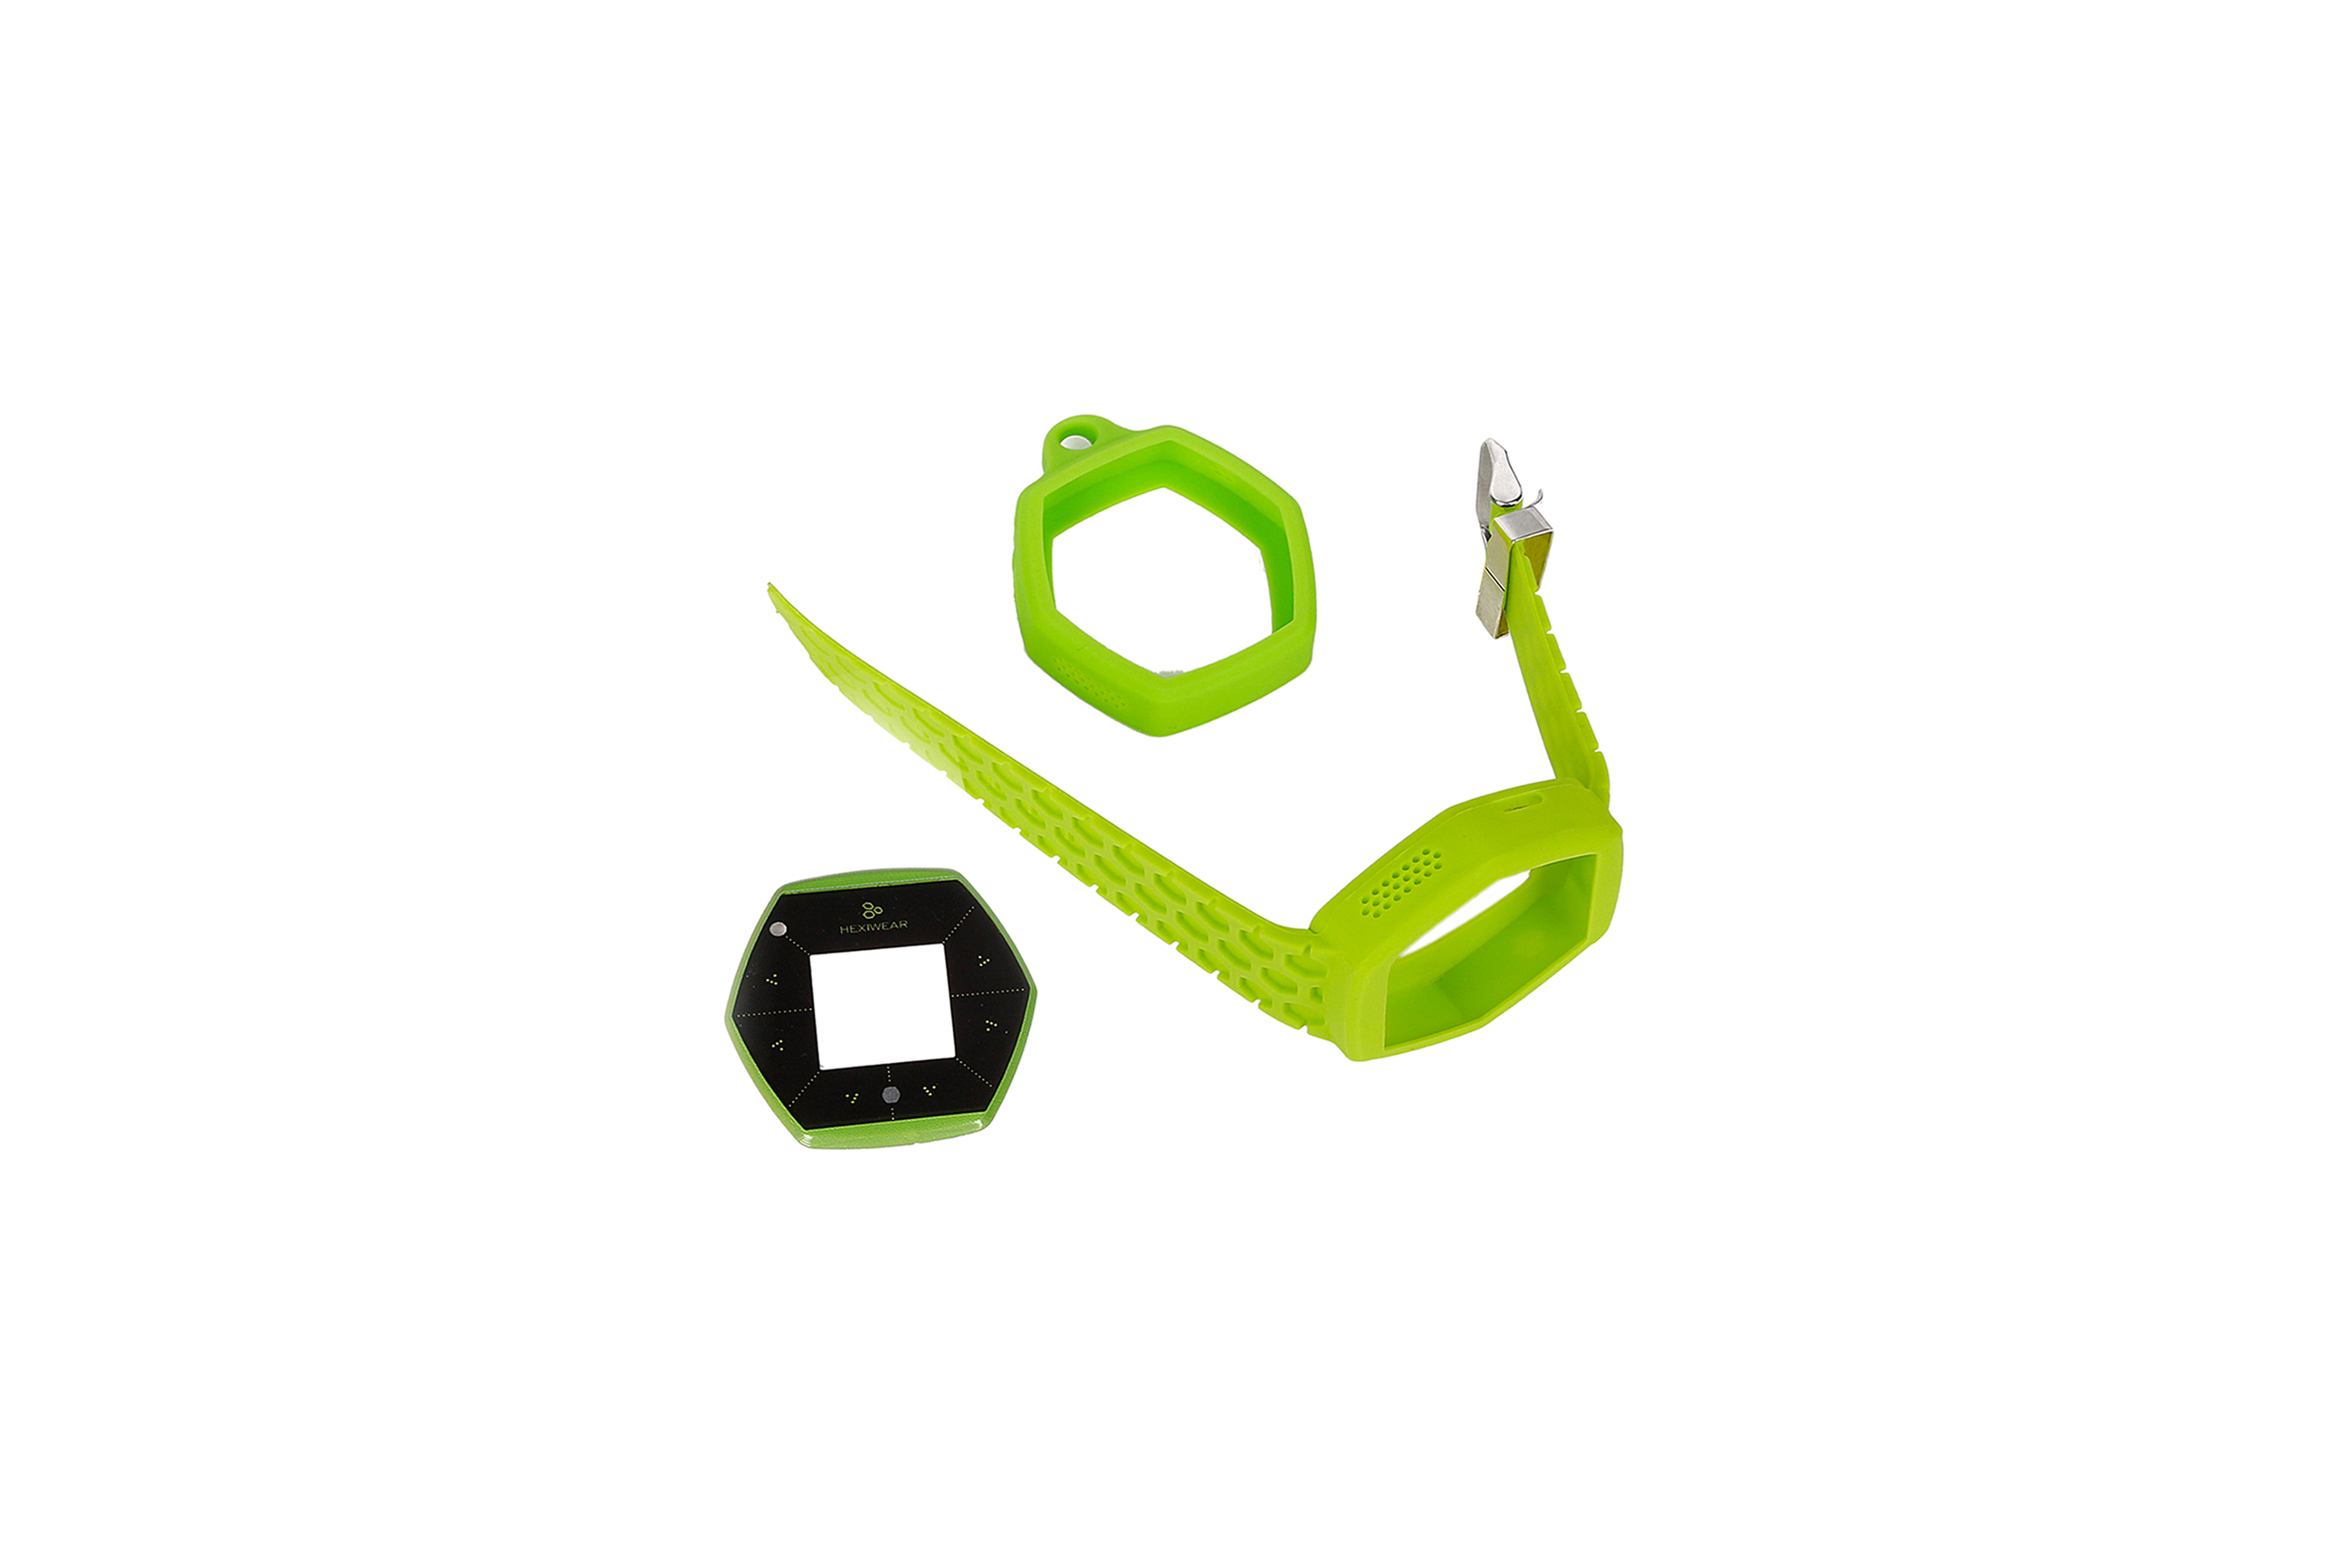 Hexiwear IoT Dev Kit Accessory Pack - Green